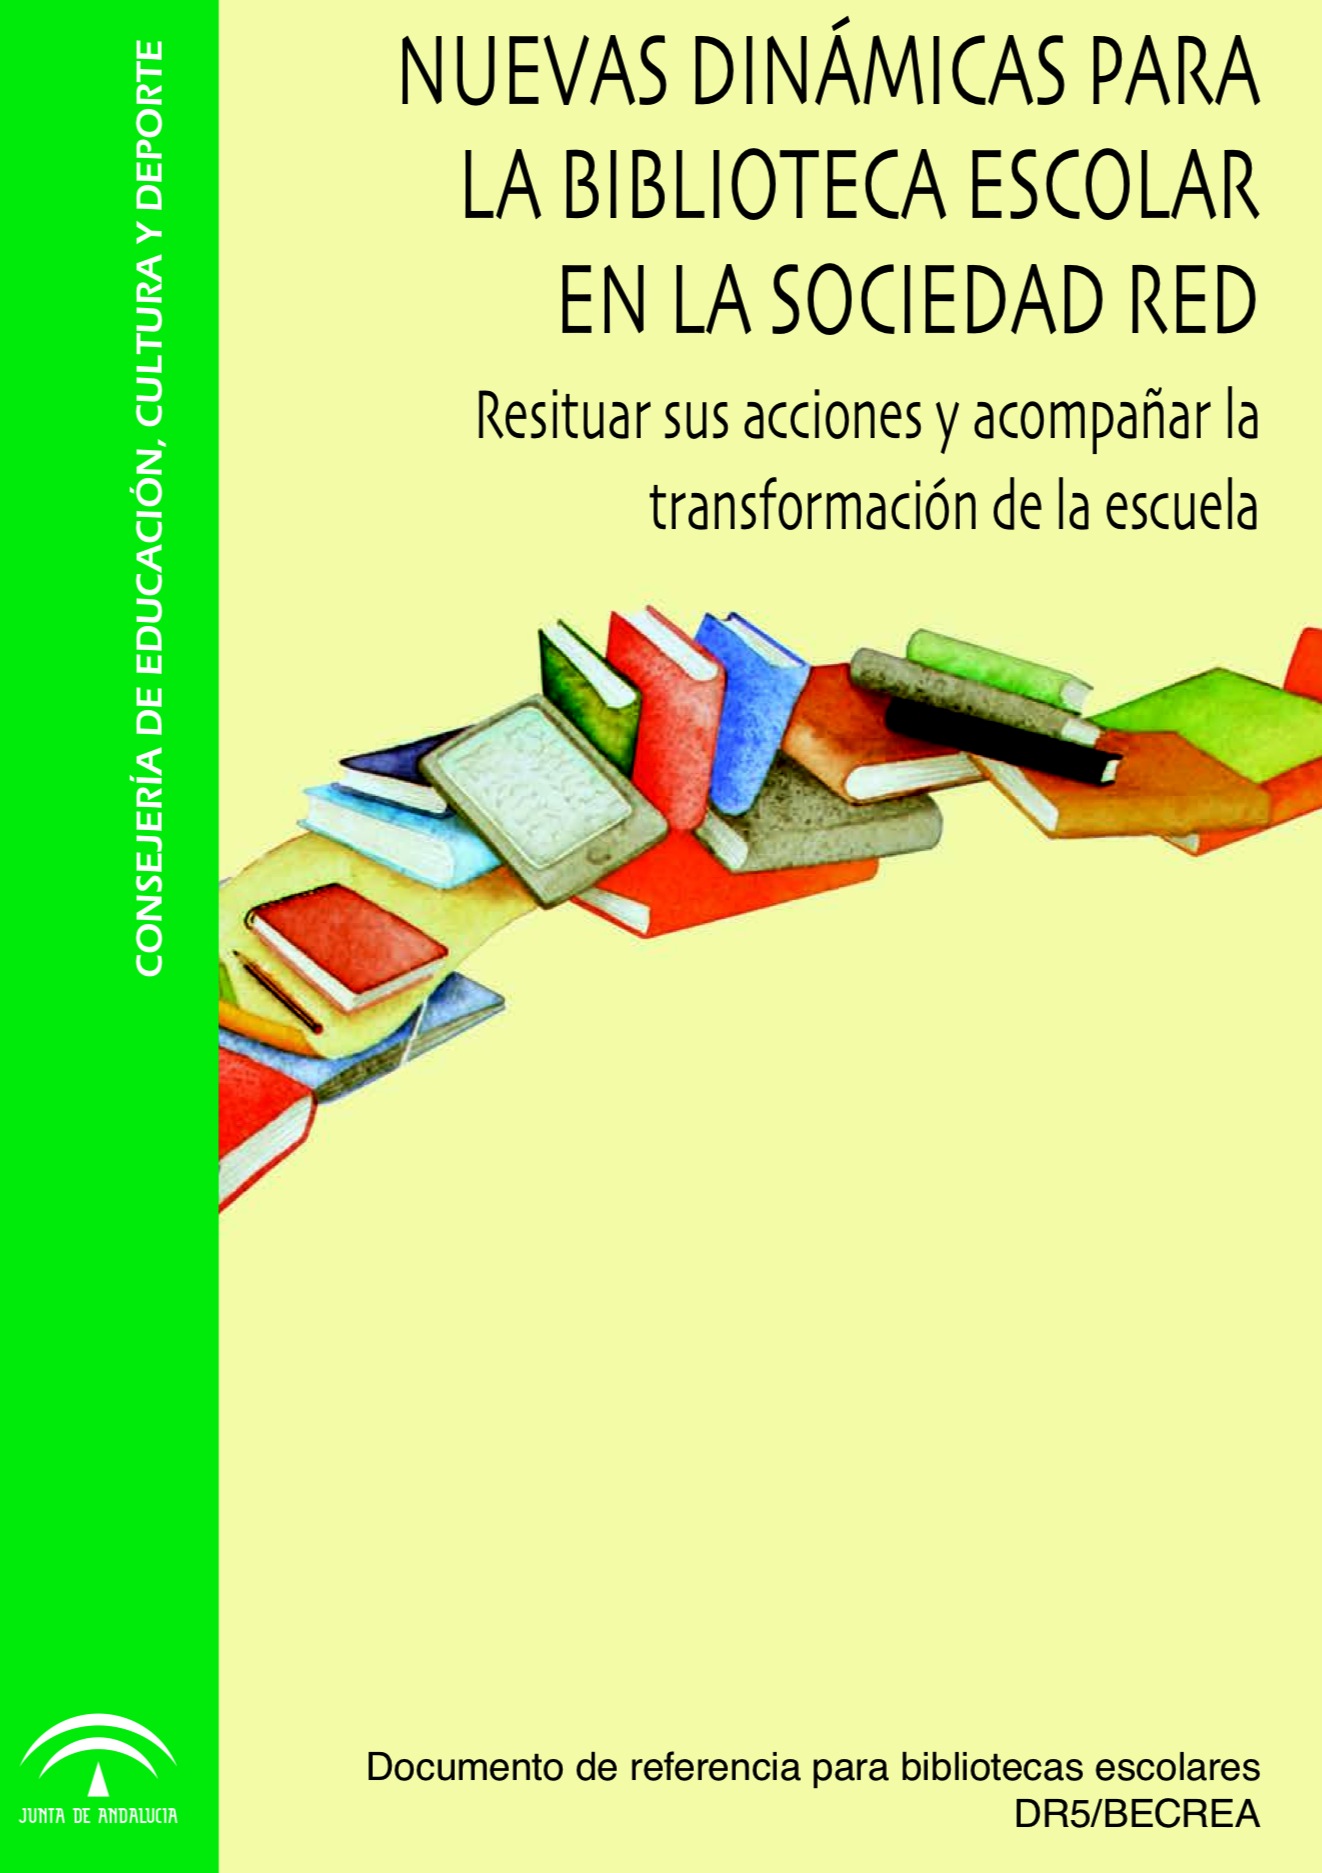 Nuevas dinámicas para la biblioteca escolar en la sociedad red (dr5becrea.PNG)